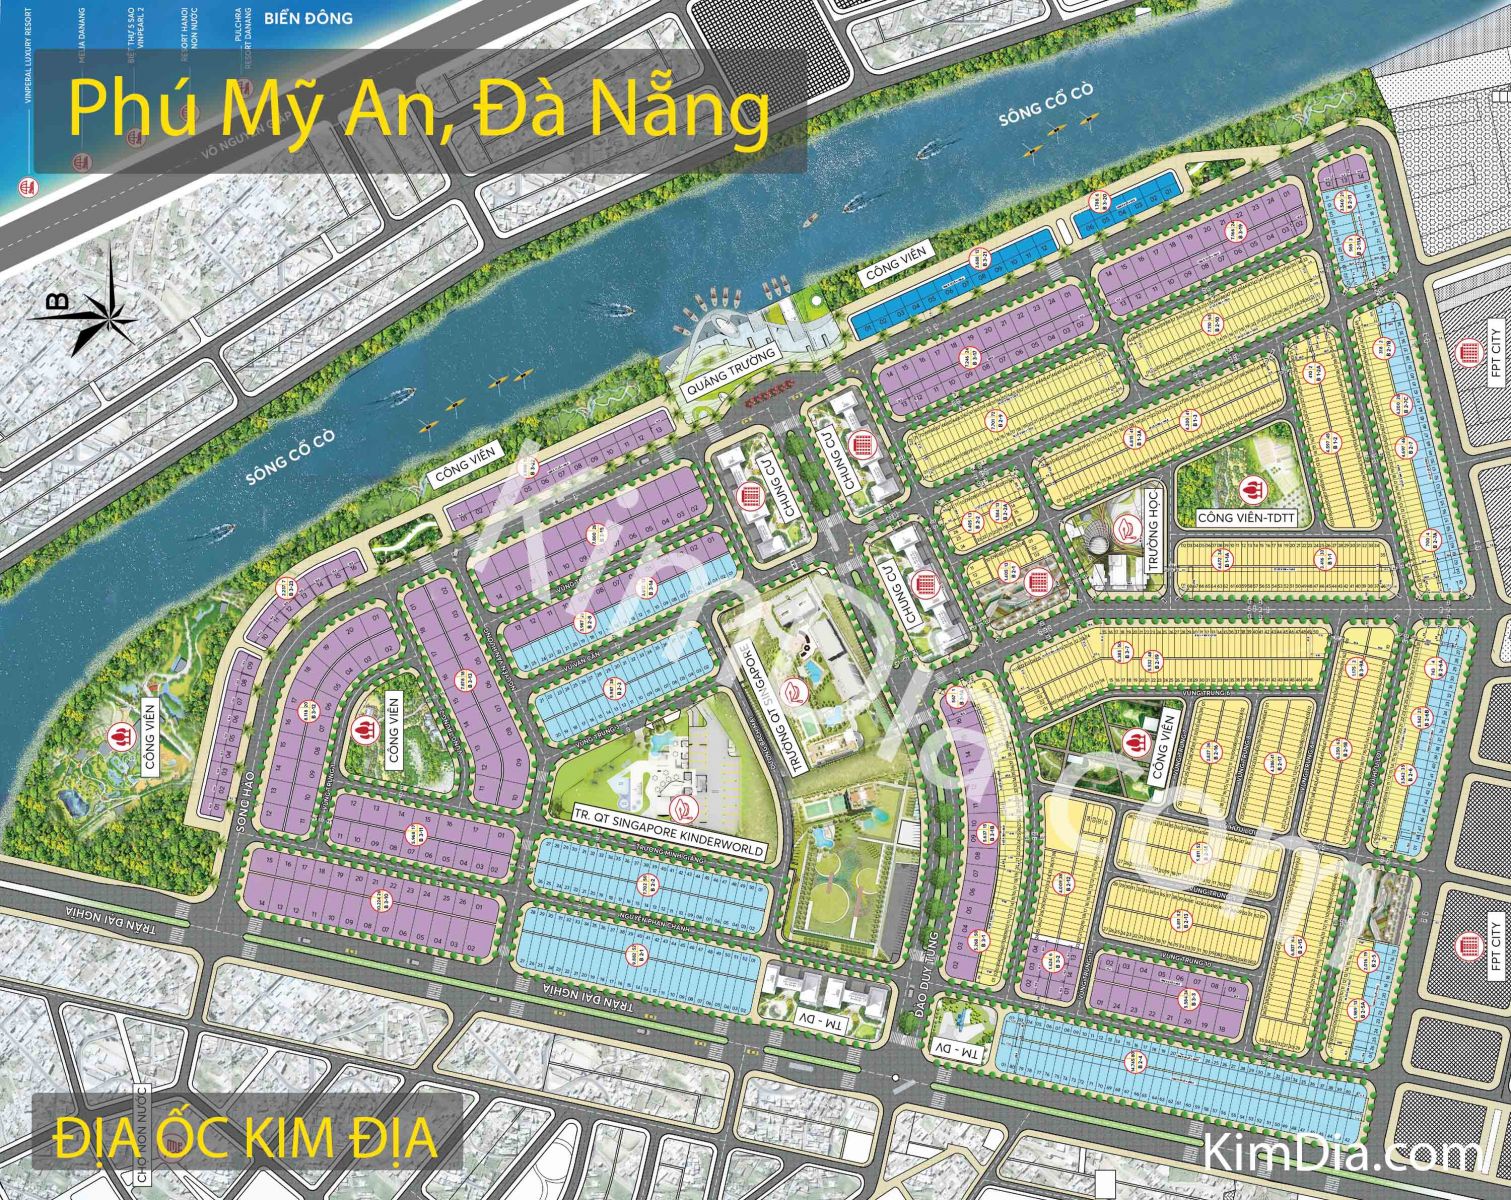 Dịch vụ đầu tư bất động sản tại Khu Đô thị Phú Mỹ An Đà Nẵng năm 2024 sẽ đem lại cho bạn không gian sống hiện đại, sang trọng và tiện nghi. Bản đồ chi tiết này sẽ cho bạn cái nhìn tổng quát về dự án, các loại hình căn hộ đa dạng và các tiện ích xung quanh khu vực.